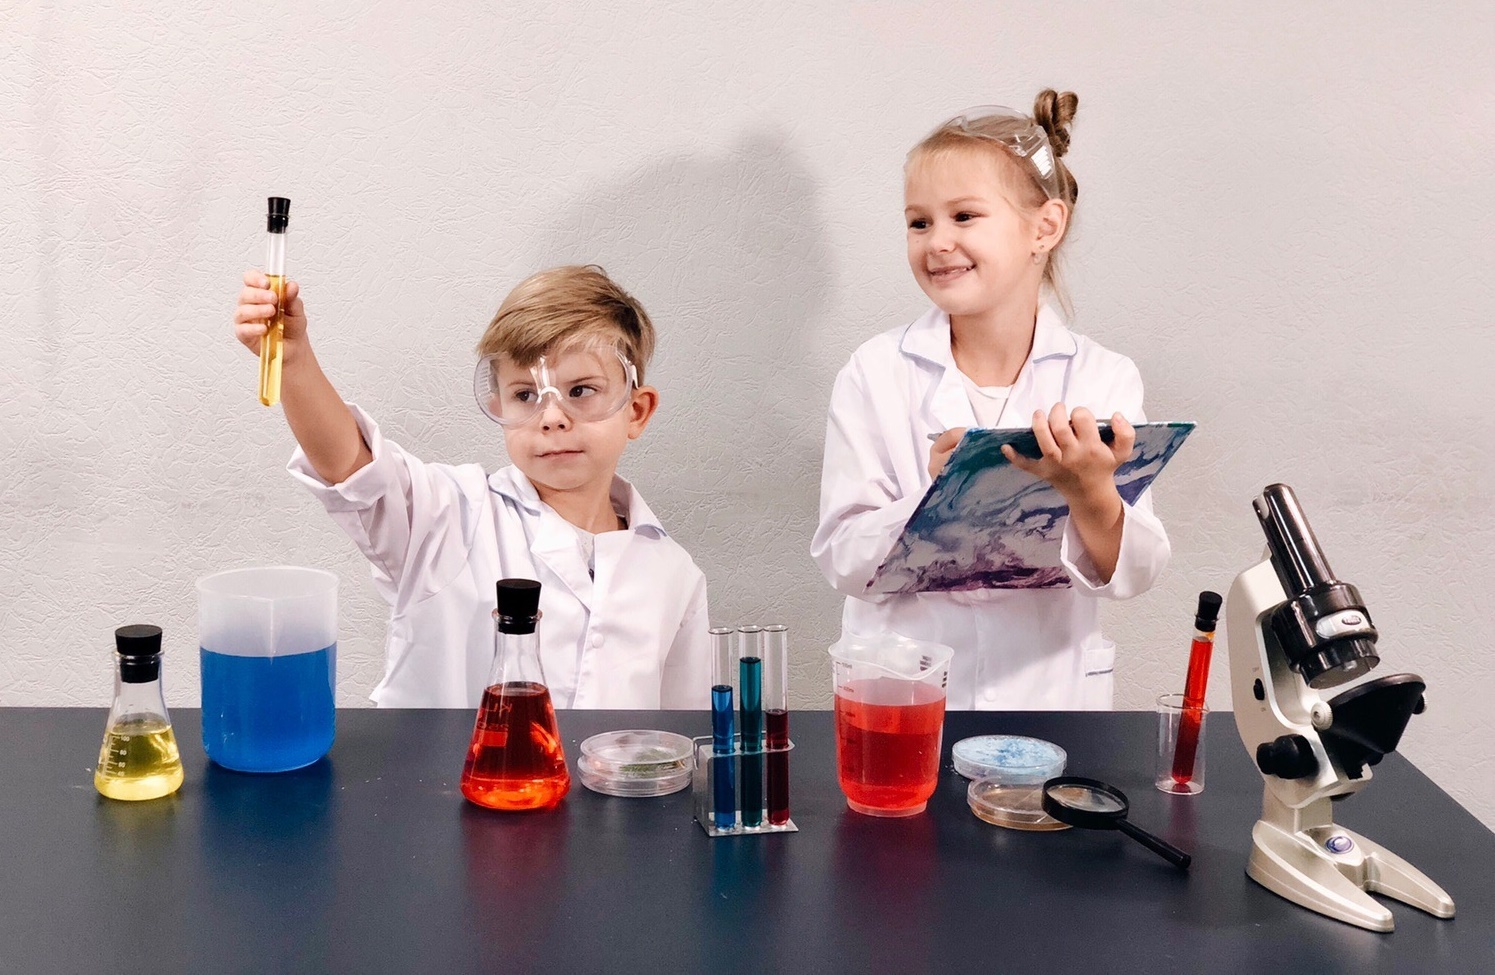 Школа опытов и экспериментов. Научные опыты для детей. Лаборатория для детей. Химические опыты для детей. Химия опыты для детей.